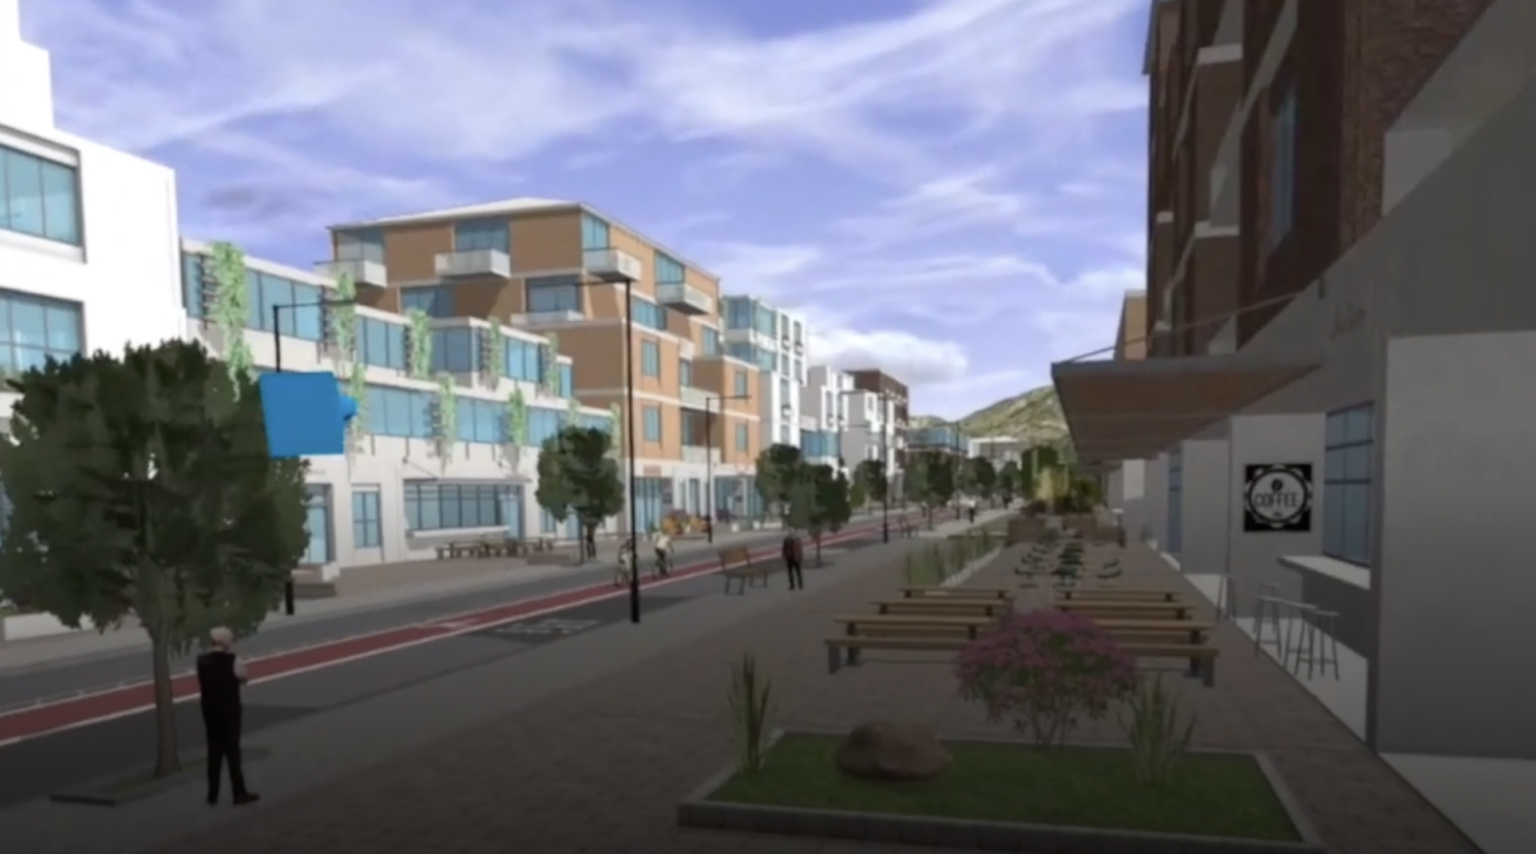 3D-сцена городского квартала со зданиями, дорогой и зелеными деревьями, просматриваемая через гарнитуру виртуальной реальности (VR)